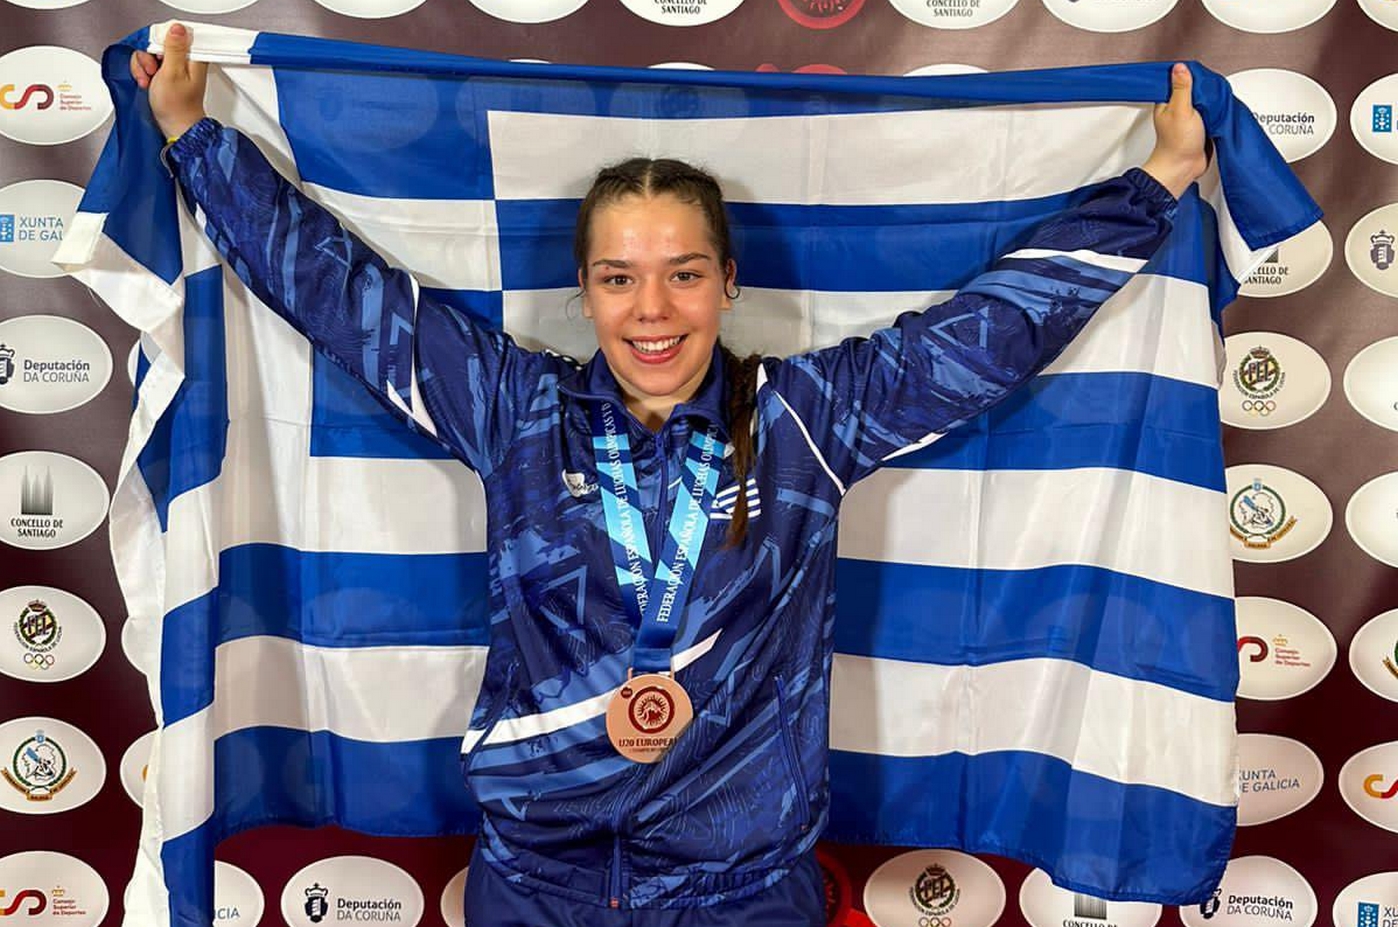 Χάλκινο μετάλλιο για την Νικολέτα Μπάρμπα στο ευρωπαϊκό πρωτάθλημα πάλης Κ20